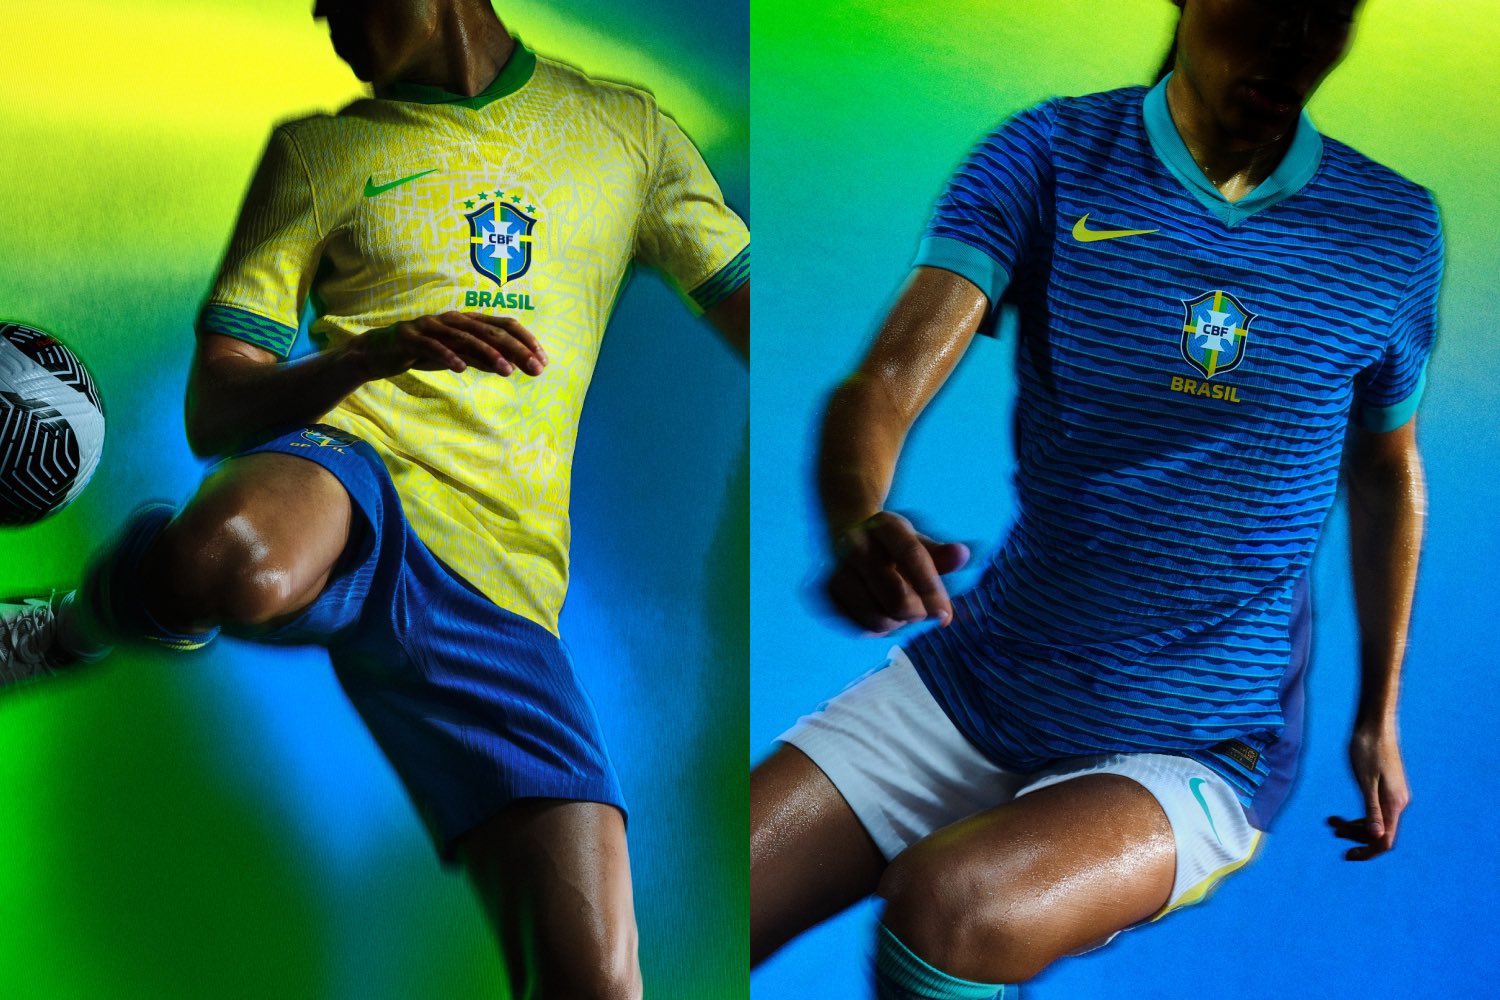 Nike lança novos uniformes da Seleção Brasileira; veja imagens